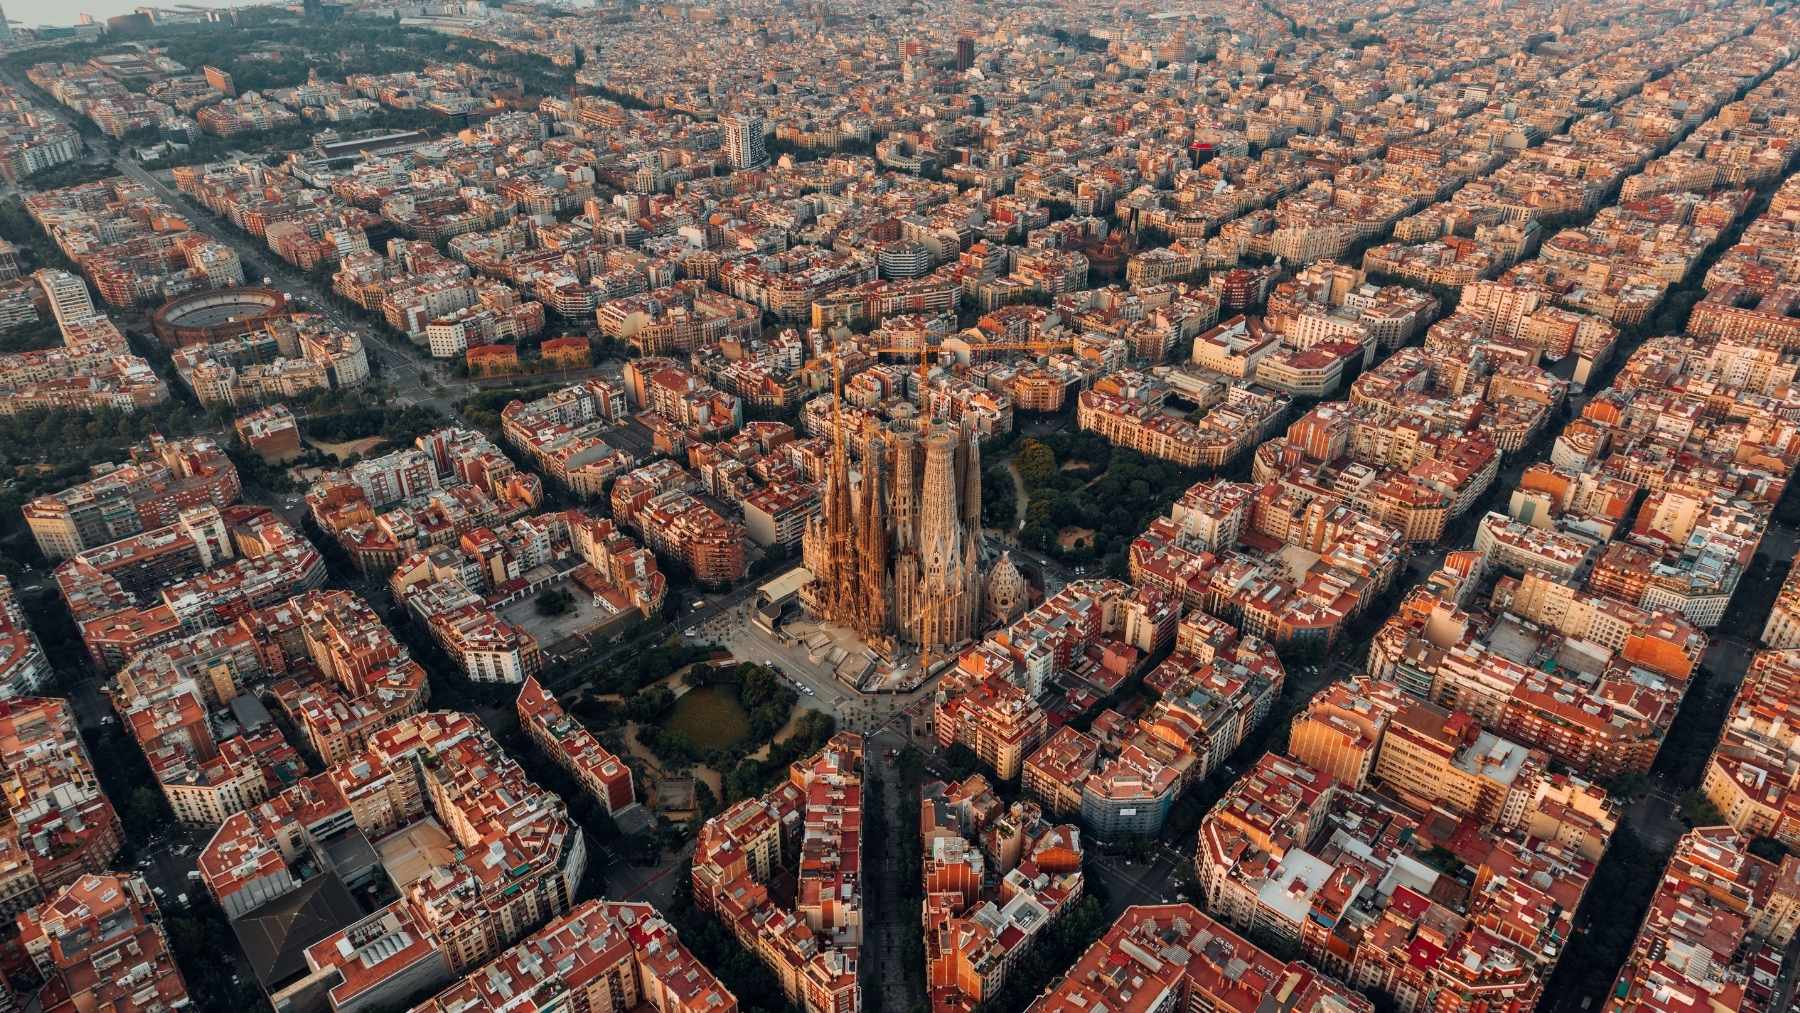 La ciudad española elegida como una de las más bonitas del mundo según las matemáticas